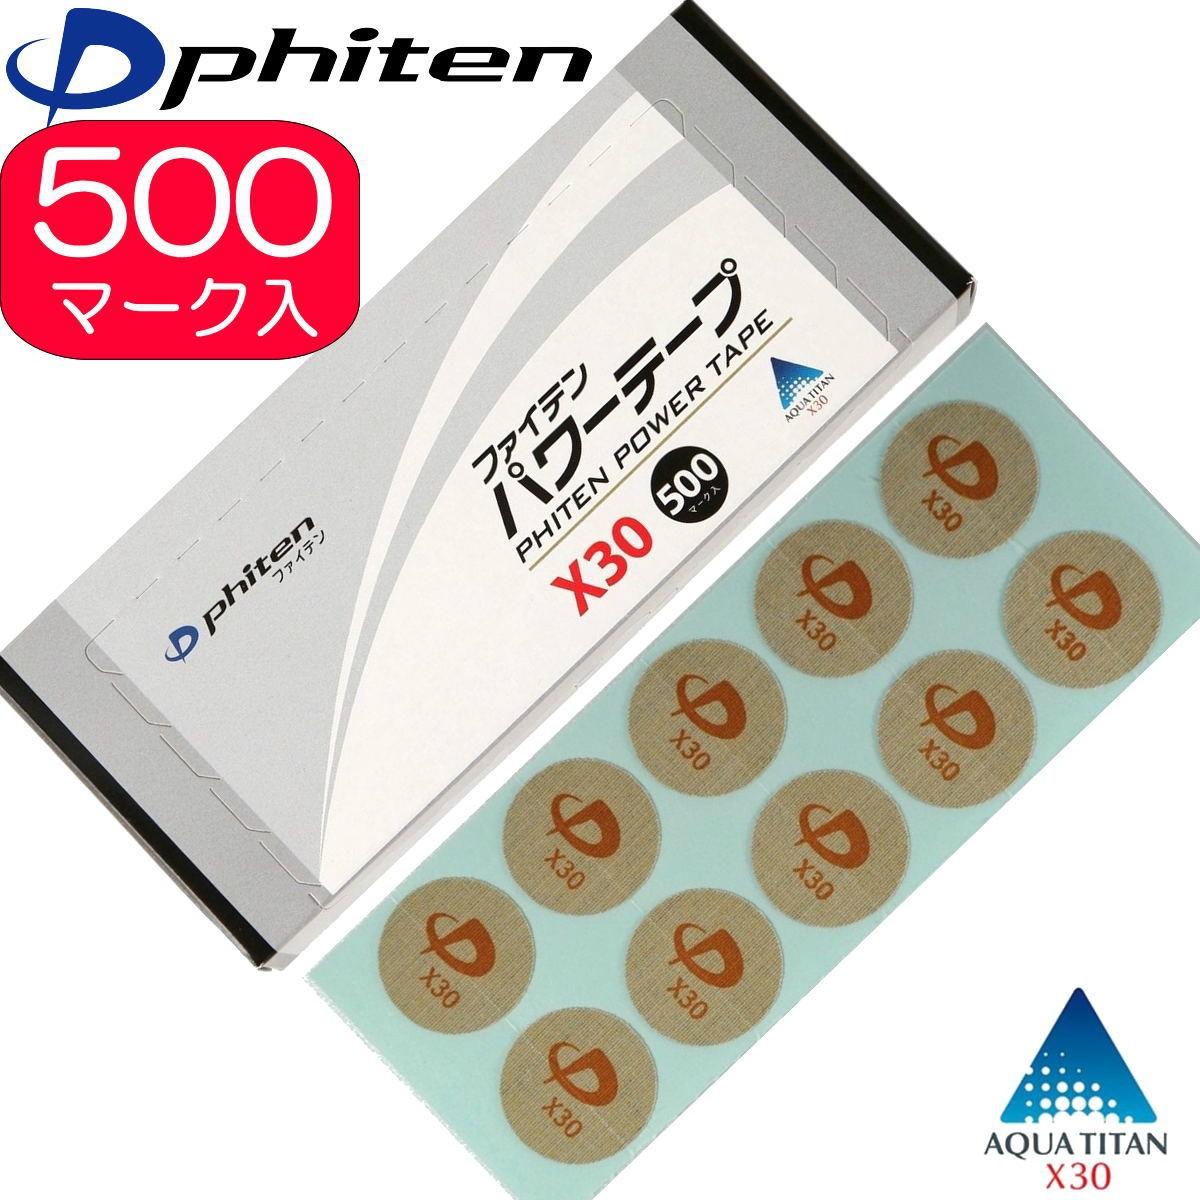 New Phiten Titanium Power Tape Patche 70 pcs Japan 